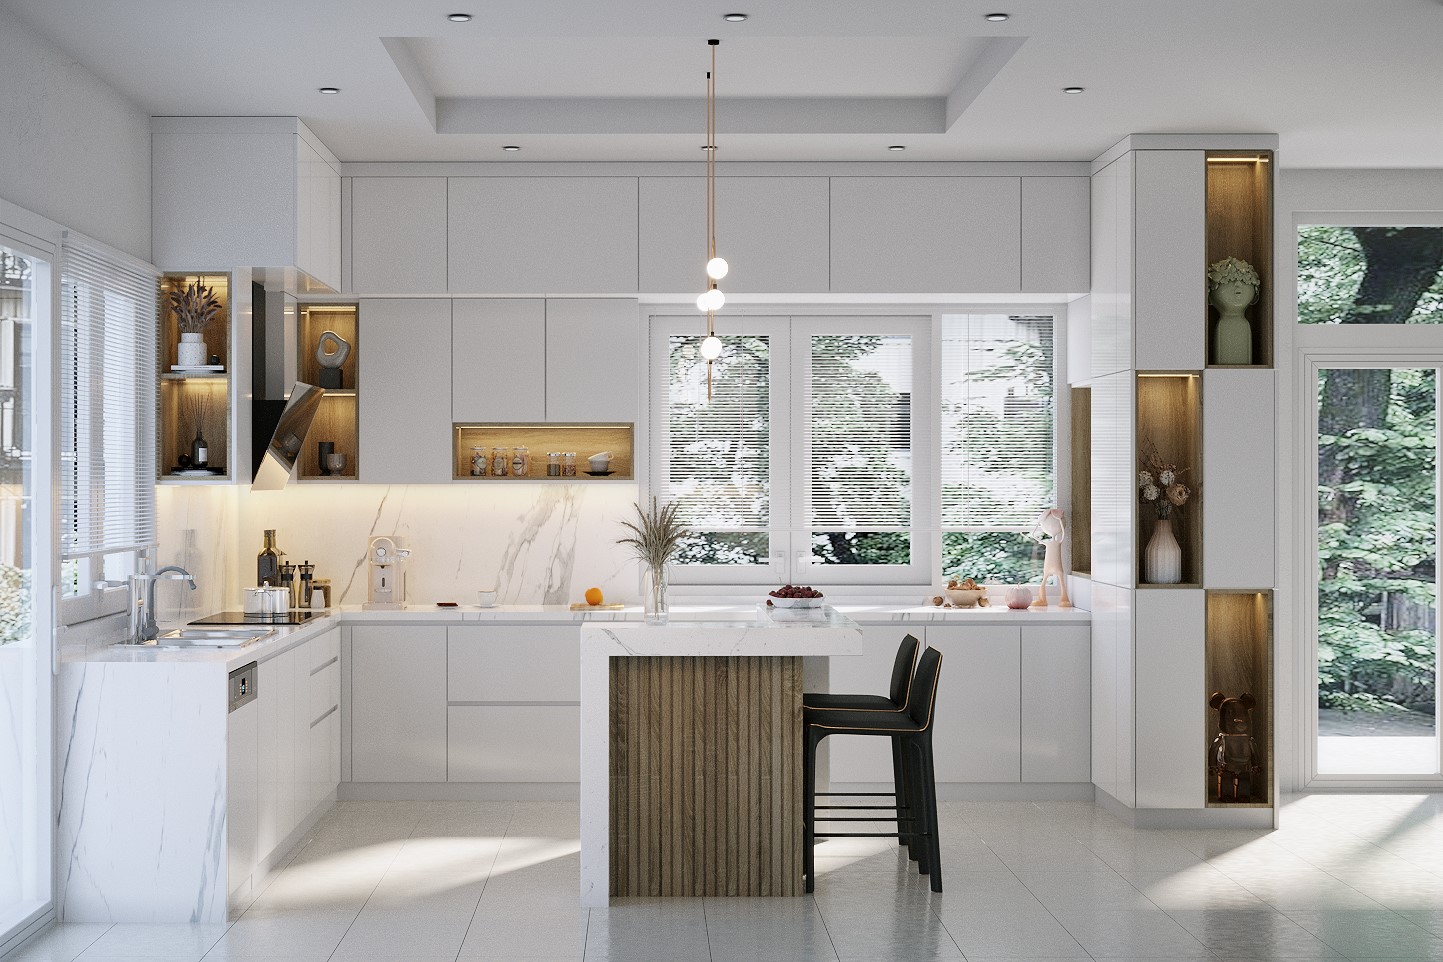 Mẫu tủ bếp sử dụng Acrylic bóng gương màu trắng kết hợp với đá ốp bếp trắng sứ vân mây